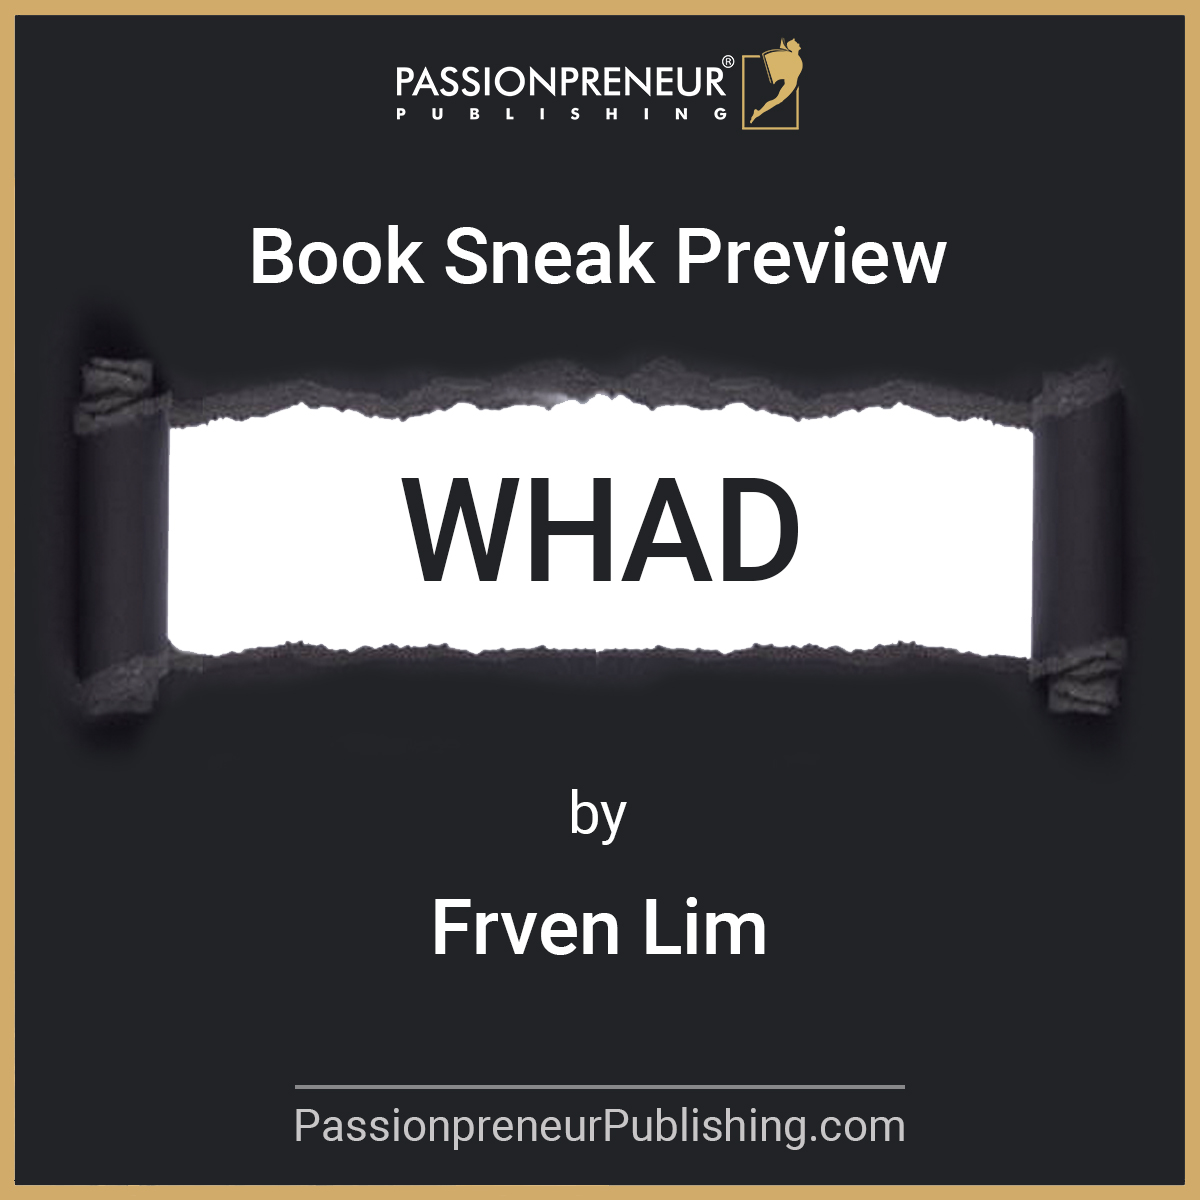 Book Sneak Preview Frven Lim